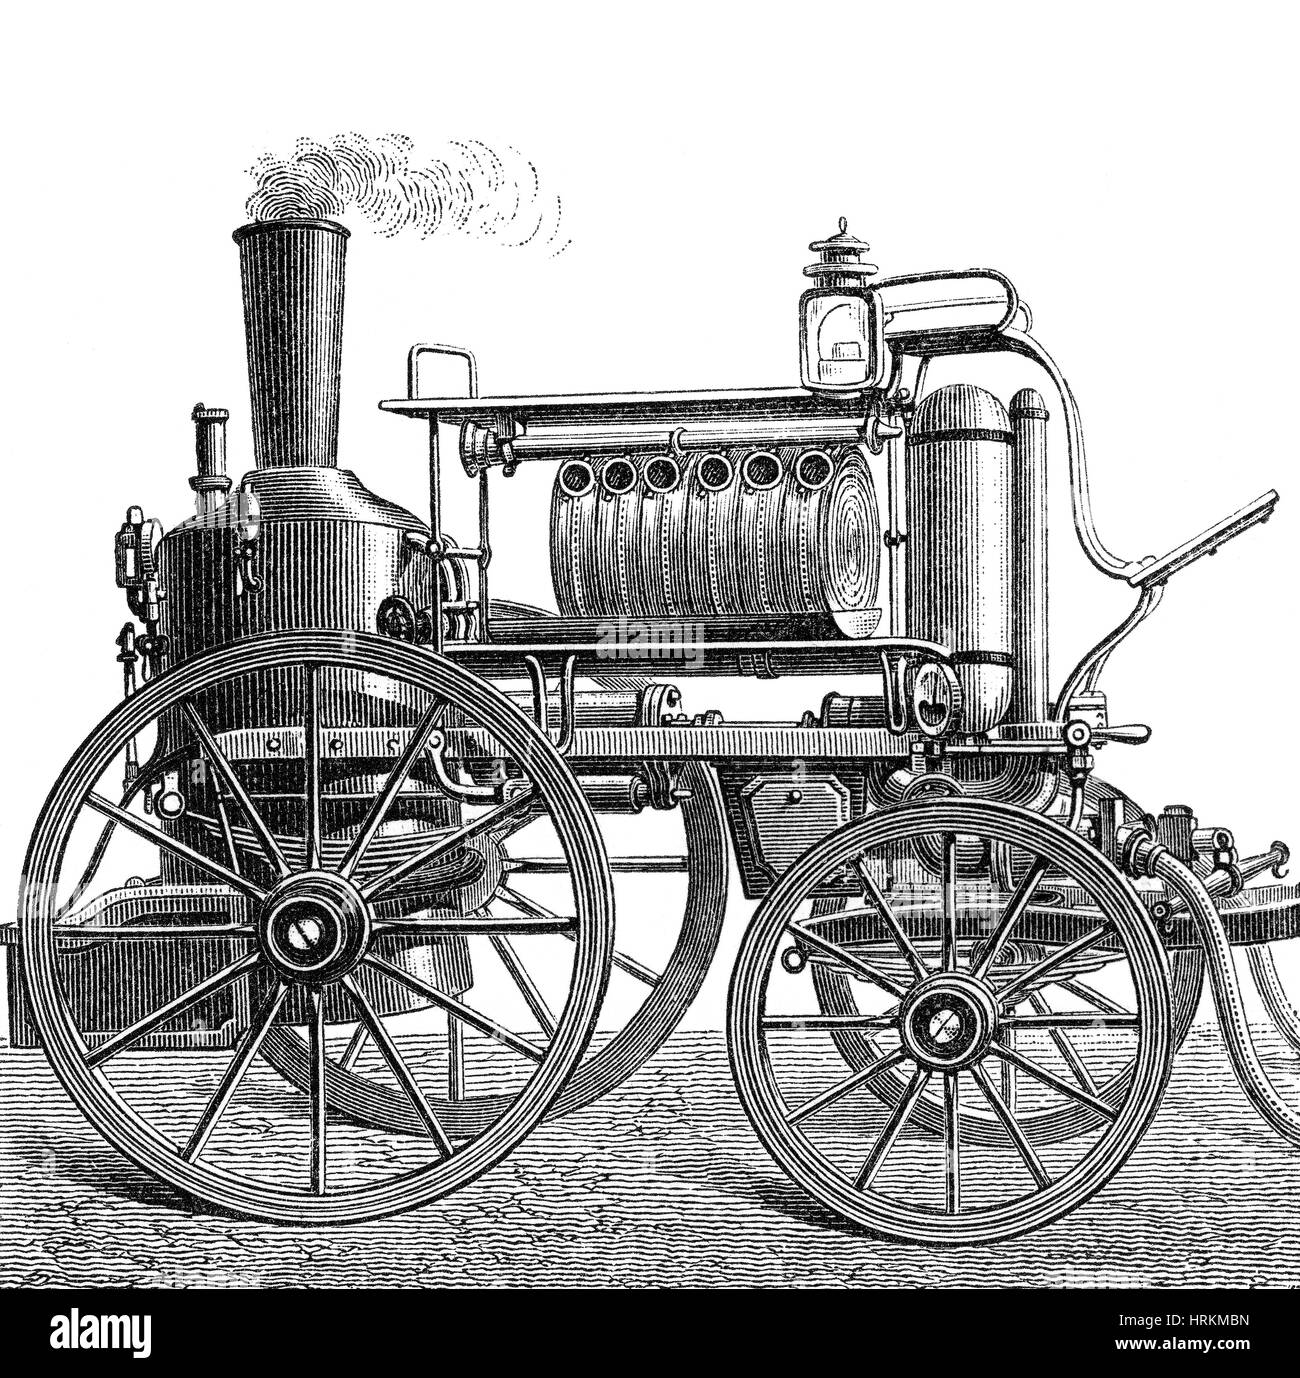 Maquina de vapor siglo xix fotografías e imágenes de alta resolución - Alamy